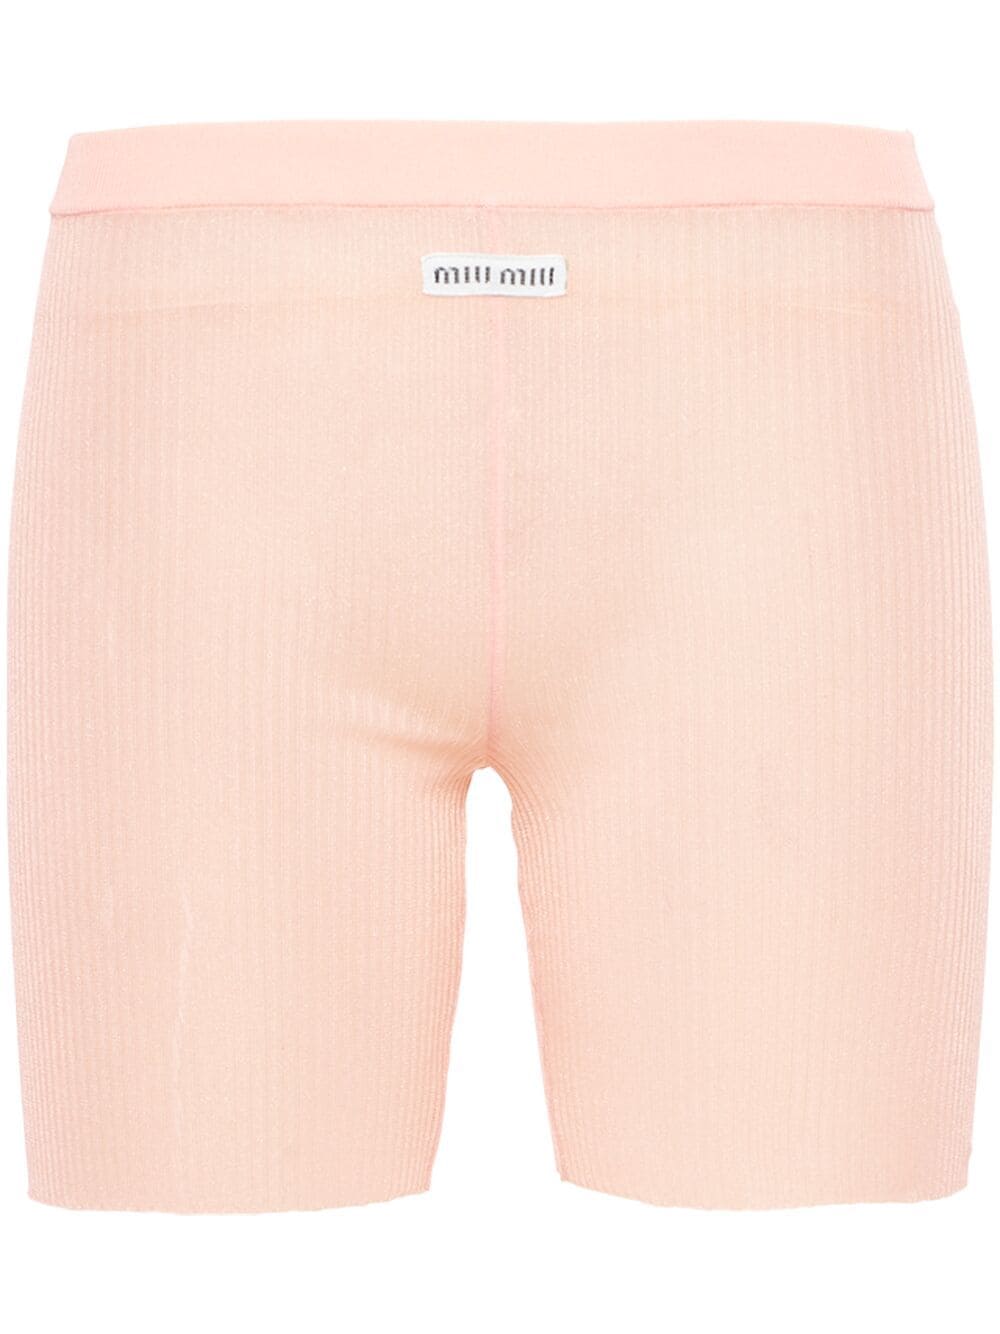 Miu Miu Nylon Shorts In Pink